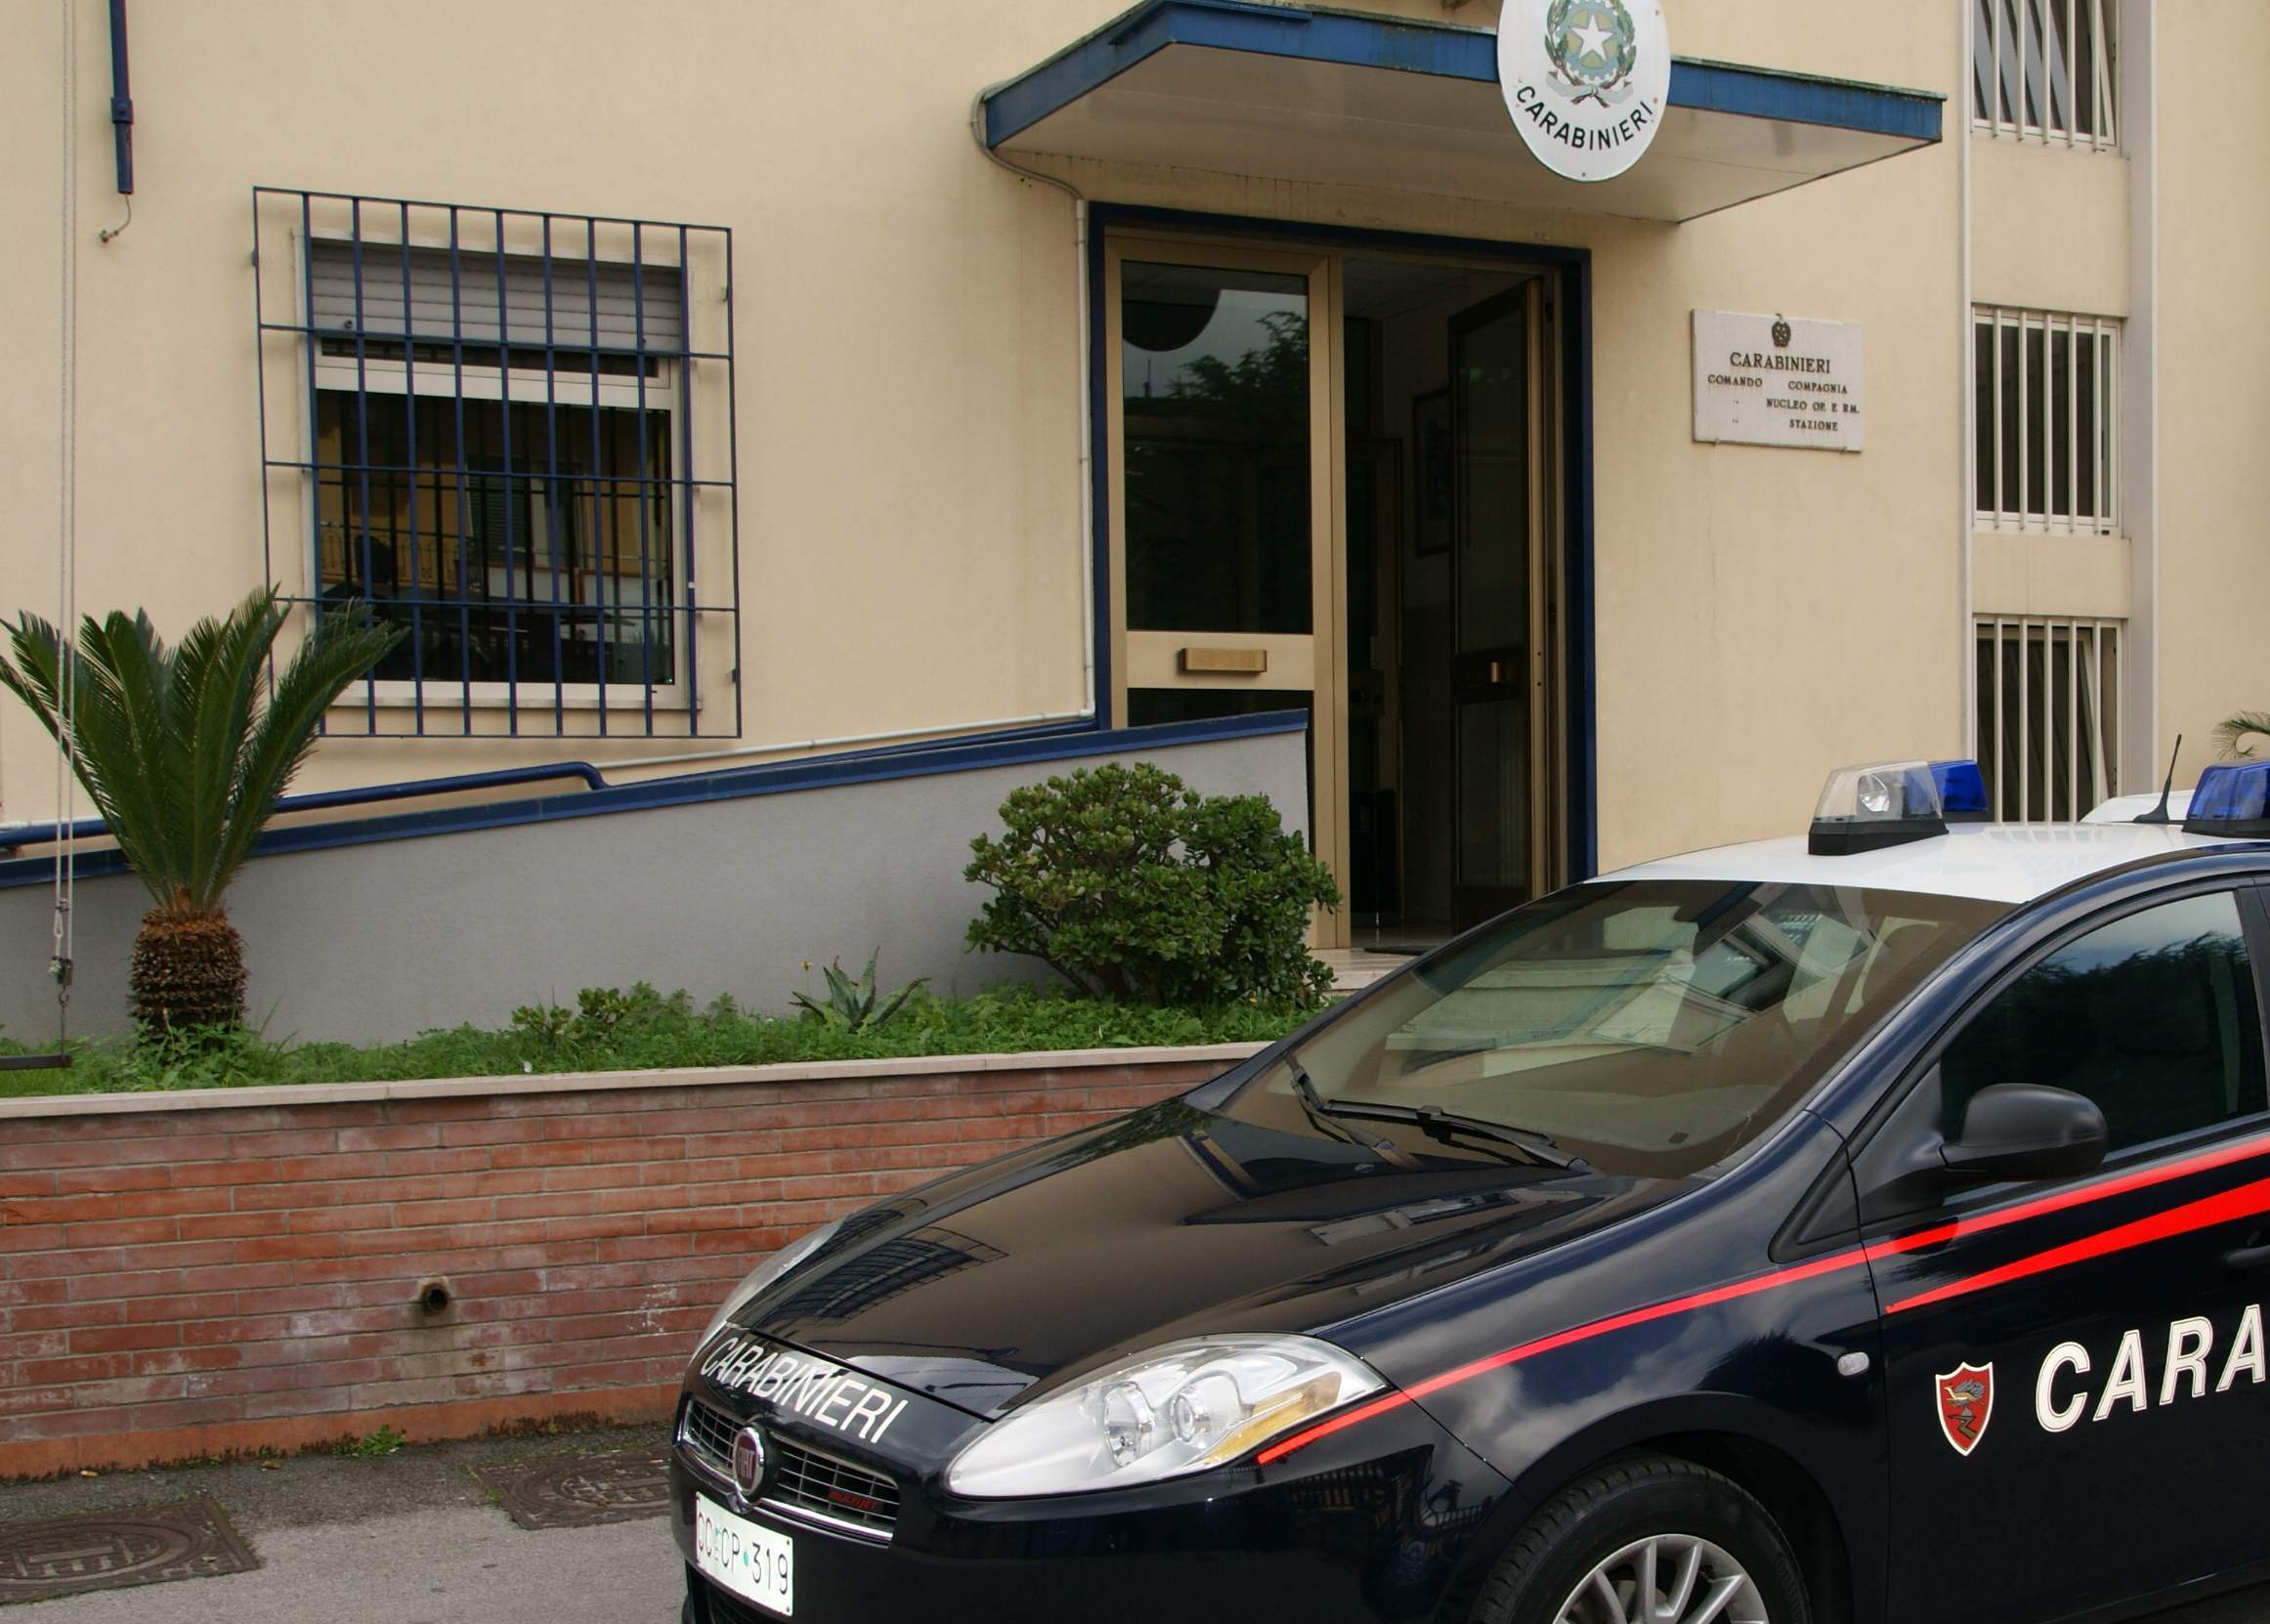 Forino| Si barrica in casa in stato di agitazione, il negoziatore dei carabinieri lo convince ad aprire